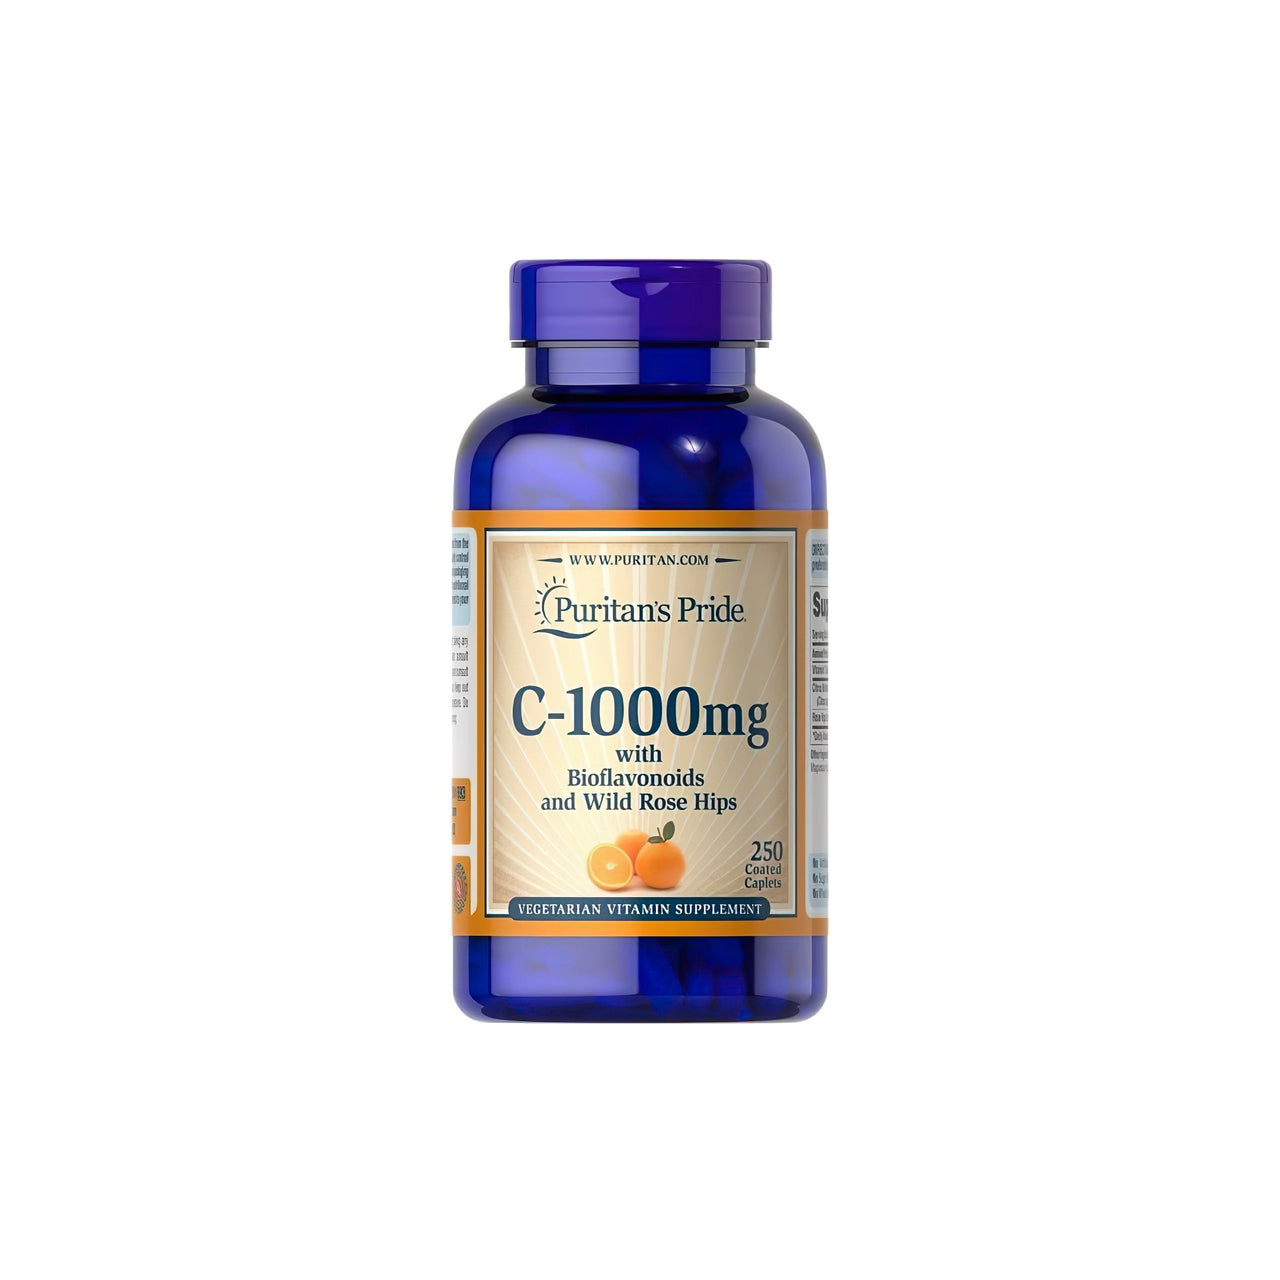 Une bouteille de Puritan's Pride Vitamine C-1000 mg avec bioflavonoïdes et cynorrhodon 250 caplets.